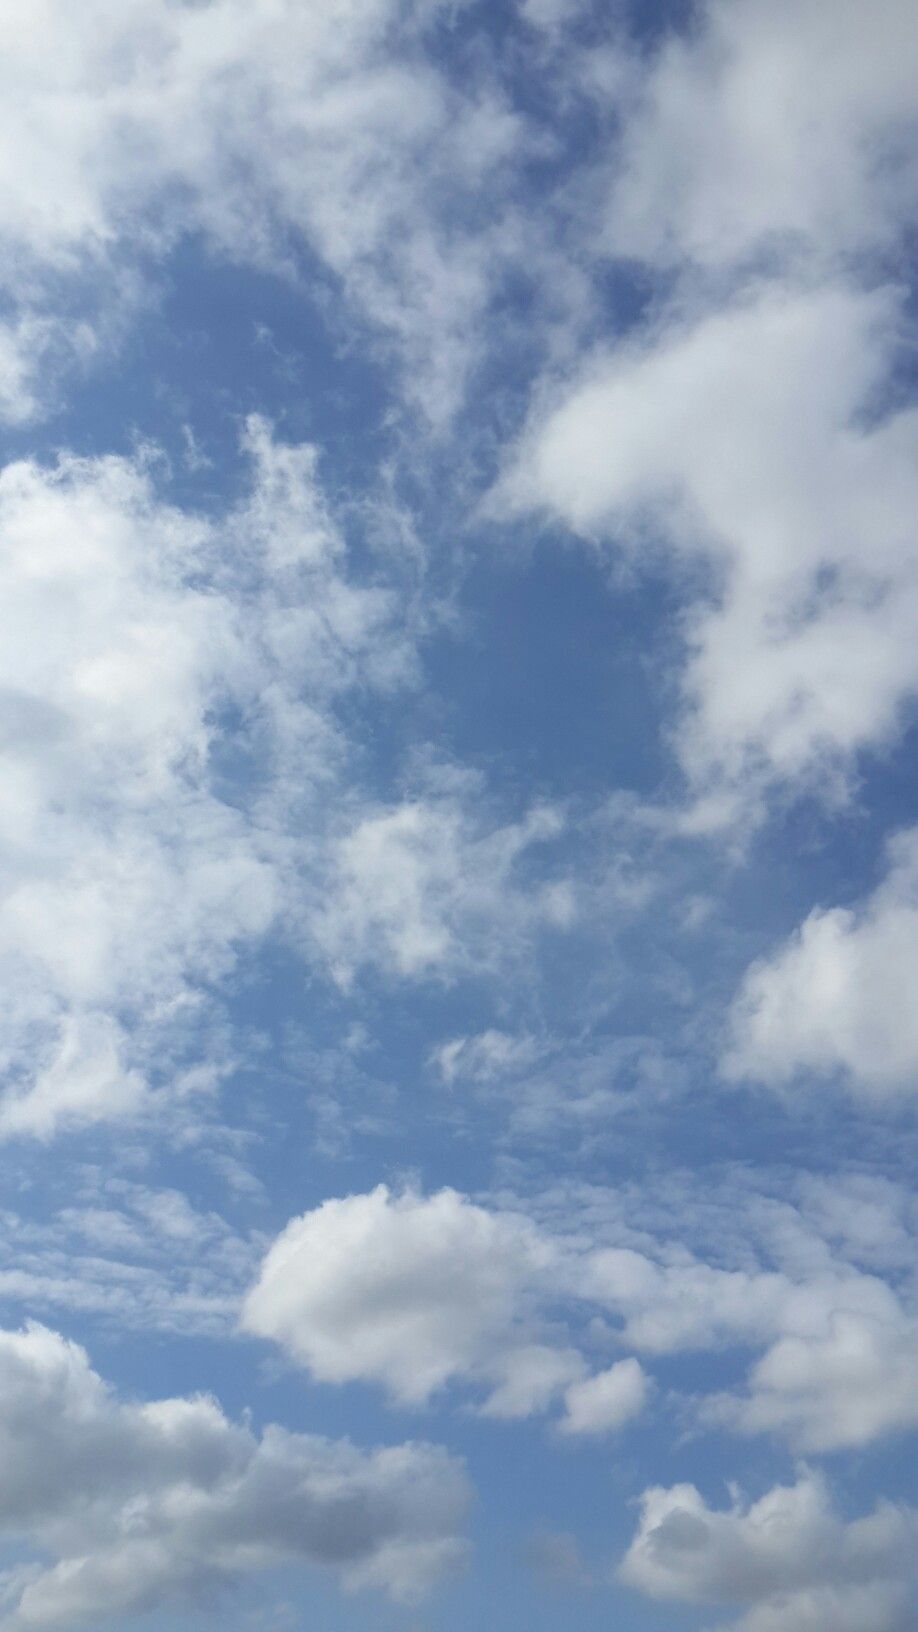 clouds & sky. Fotografía de cielos, Fondos para fotografia, Fotografía del cielo